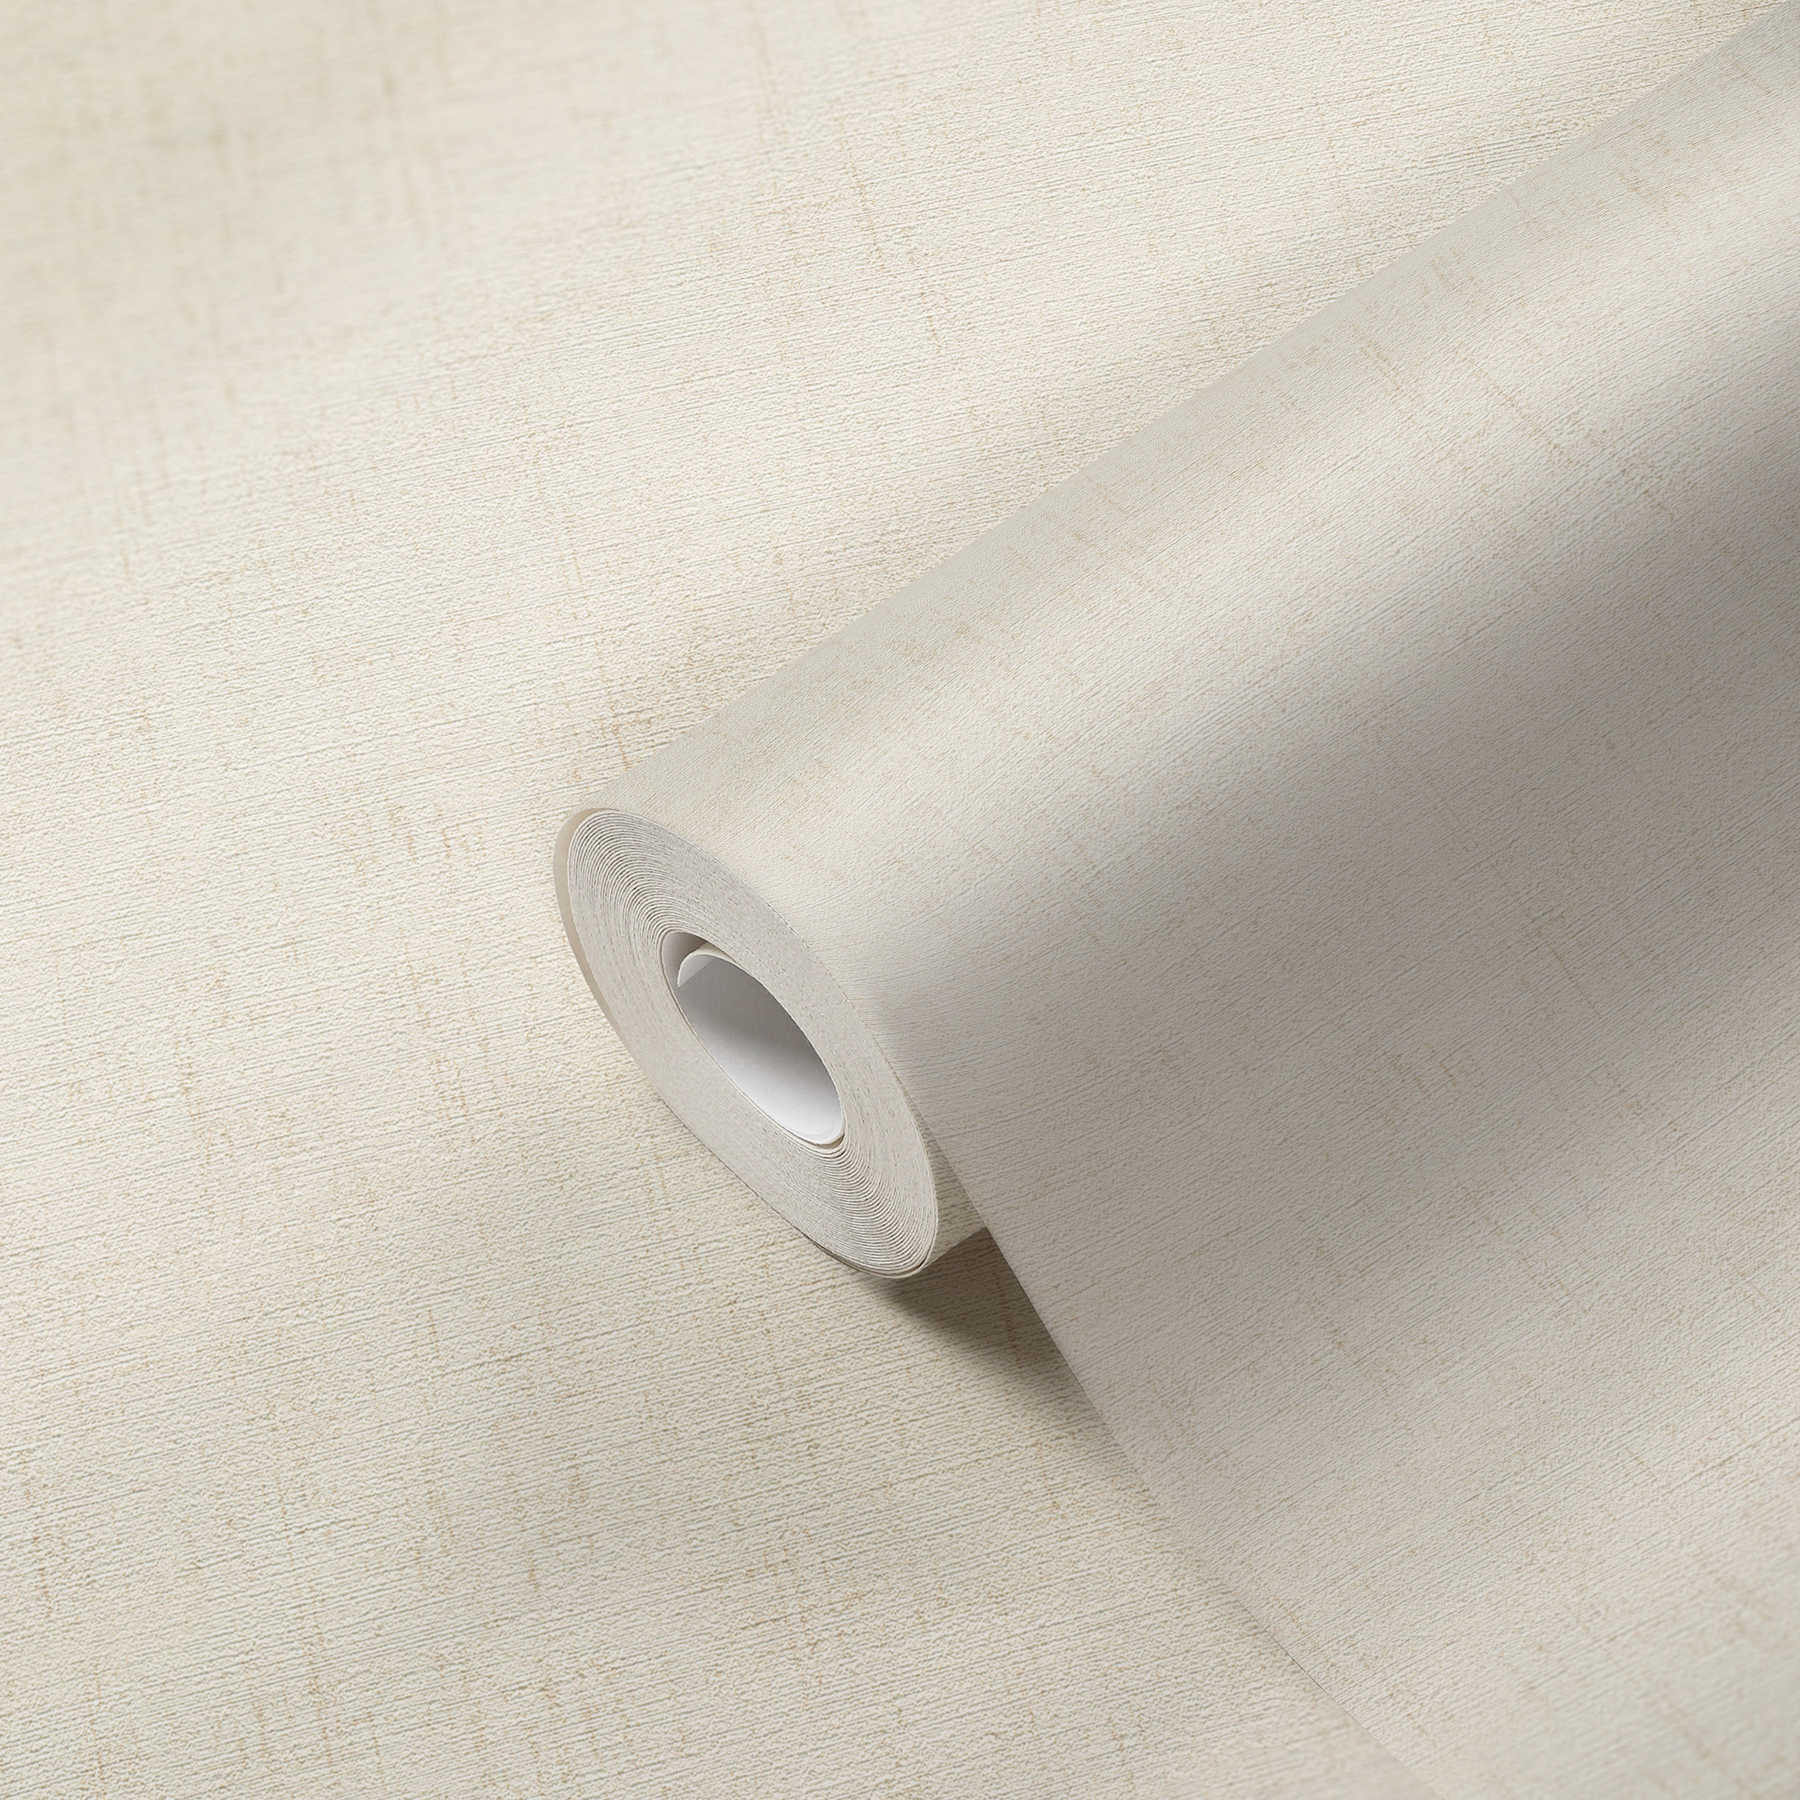             Papier peint métallique blanc avec nacre brillante & surface structurée
        